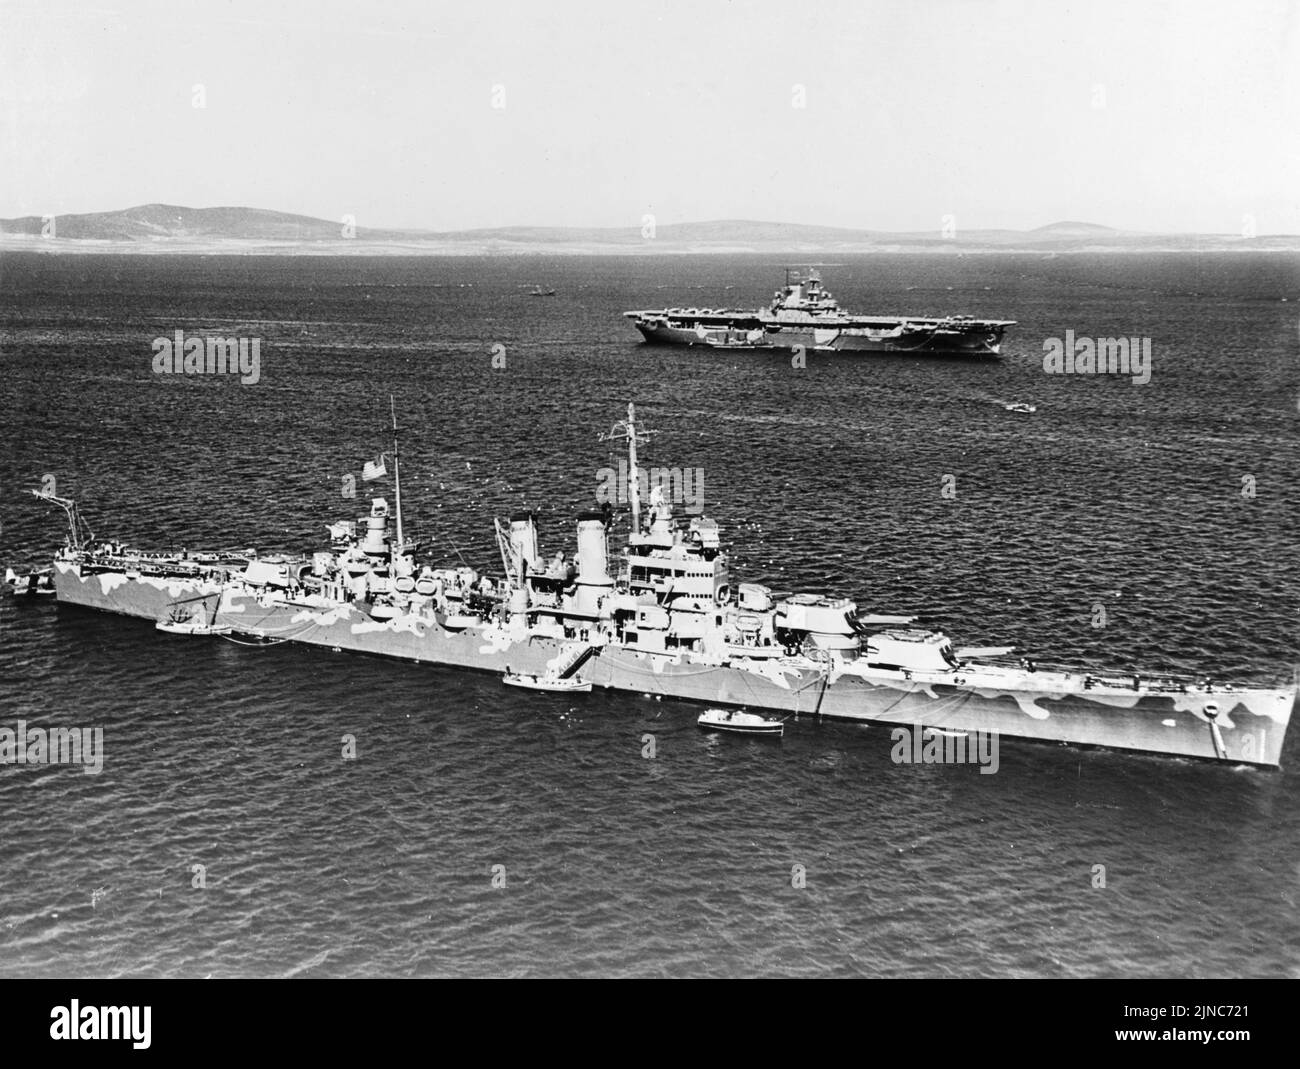 El portaaviones estadounidense USS Wasp y el crucero pesado USS Wichita en Scapa Flow. El USS Wasp fue hundido unos meses después de ser torpedeado durante la invasión de Guadalcanal en septiembre de 1942. Foto de stock